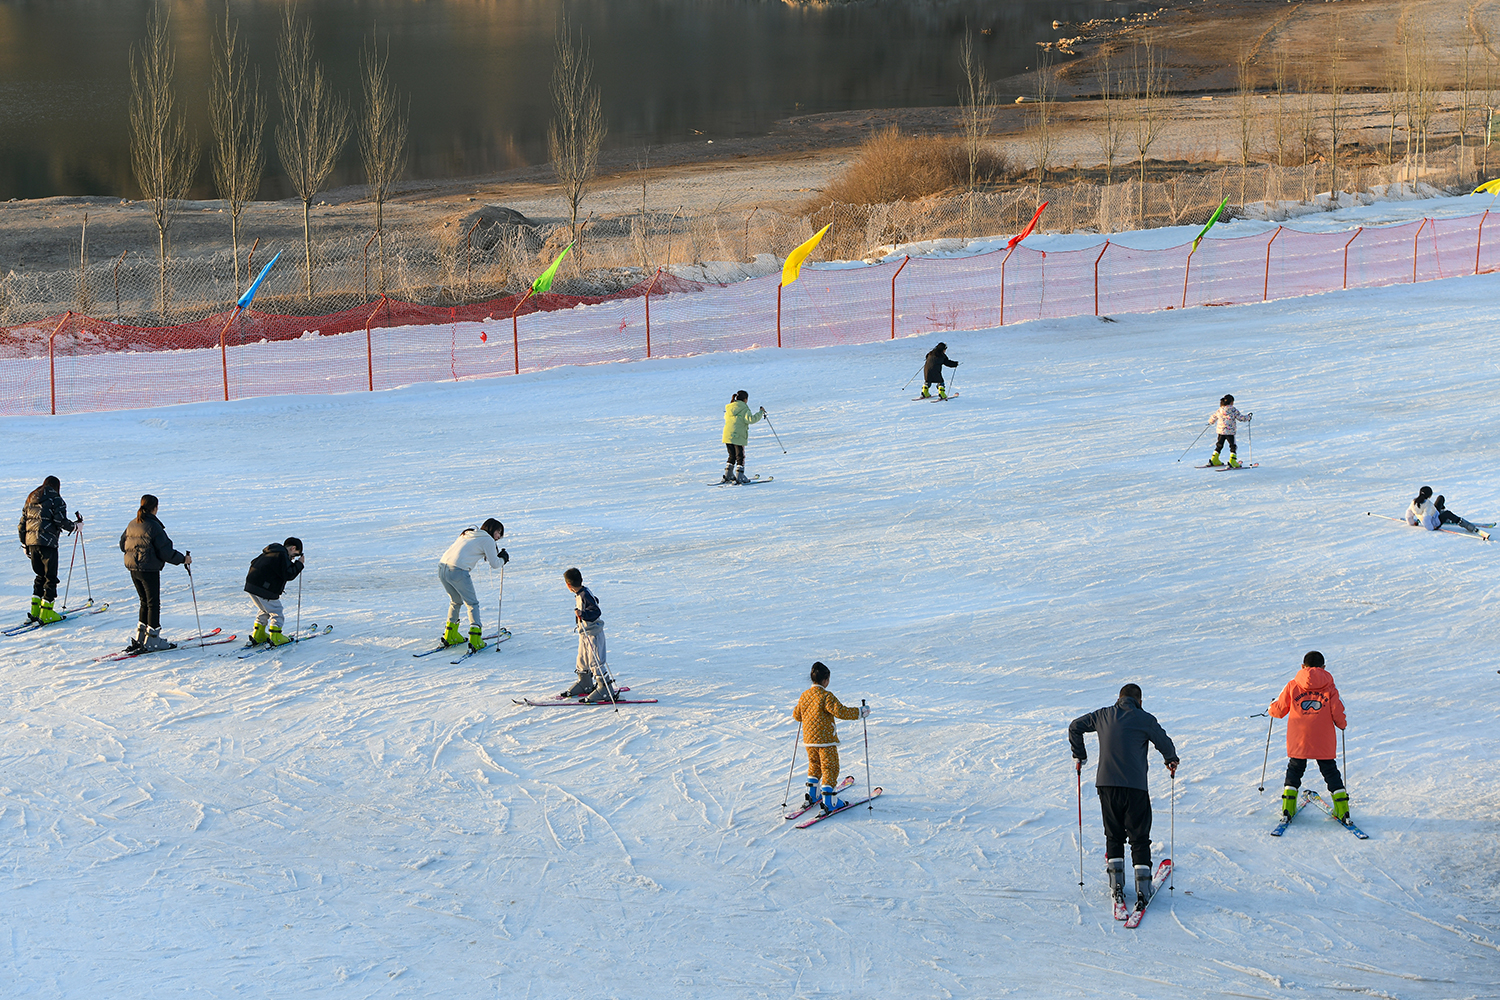 滑雪者在雪道上練習、滑行。